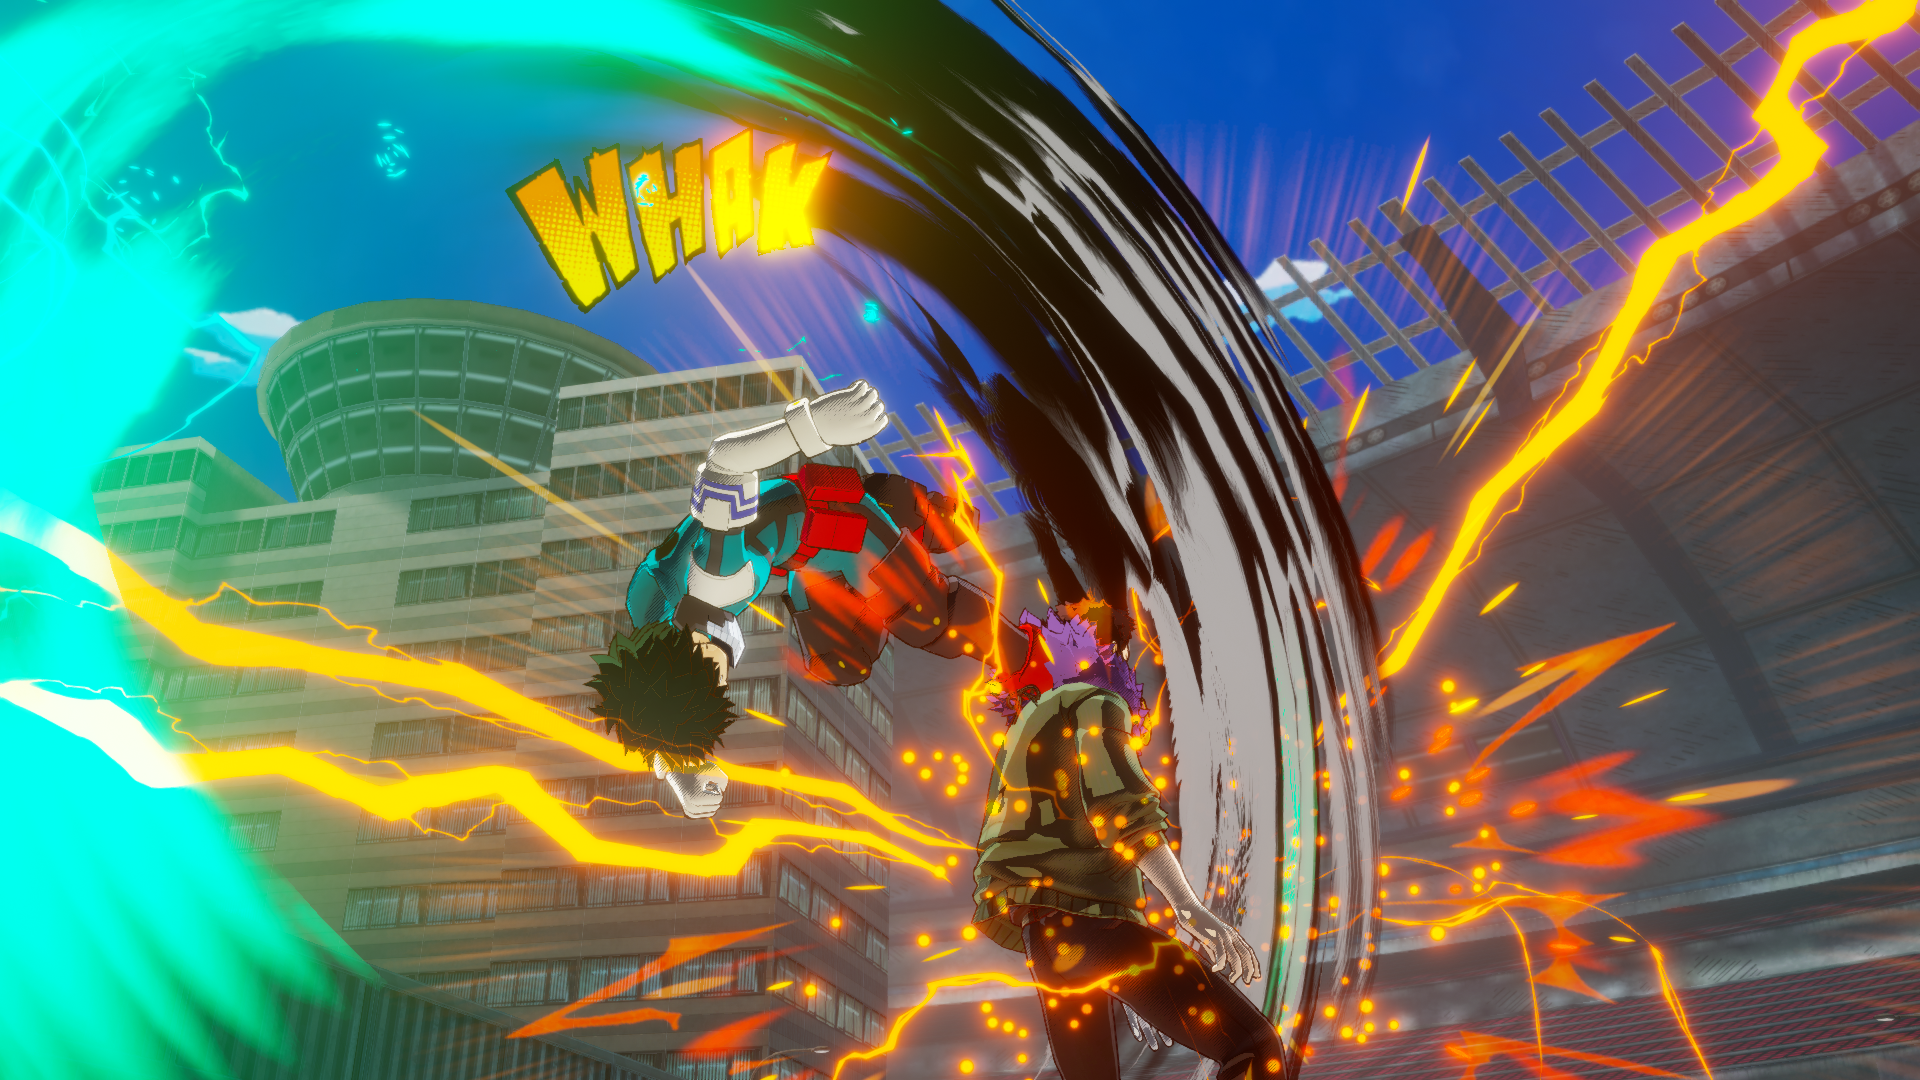 Prévia: My Hero One's Justice 2 (Multi) quer mostrar o 'Plus Ultra' que  faltou no jogo anterior - GameBlast